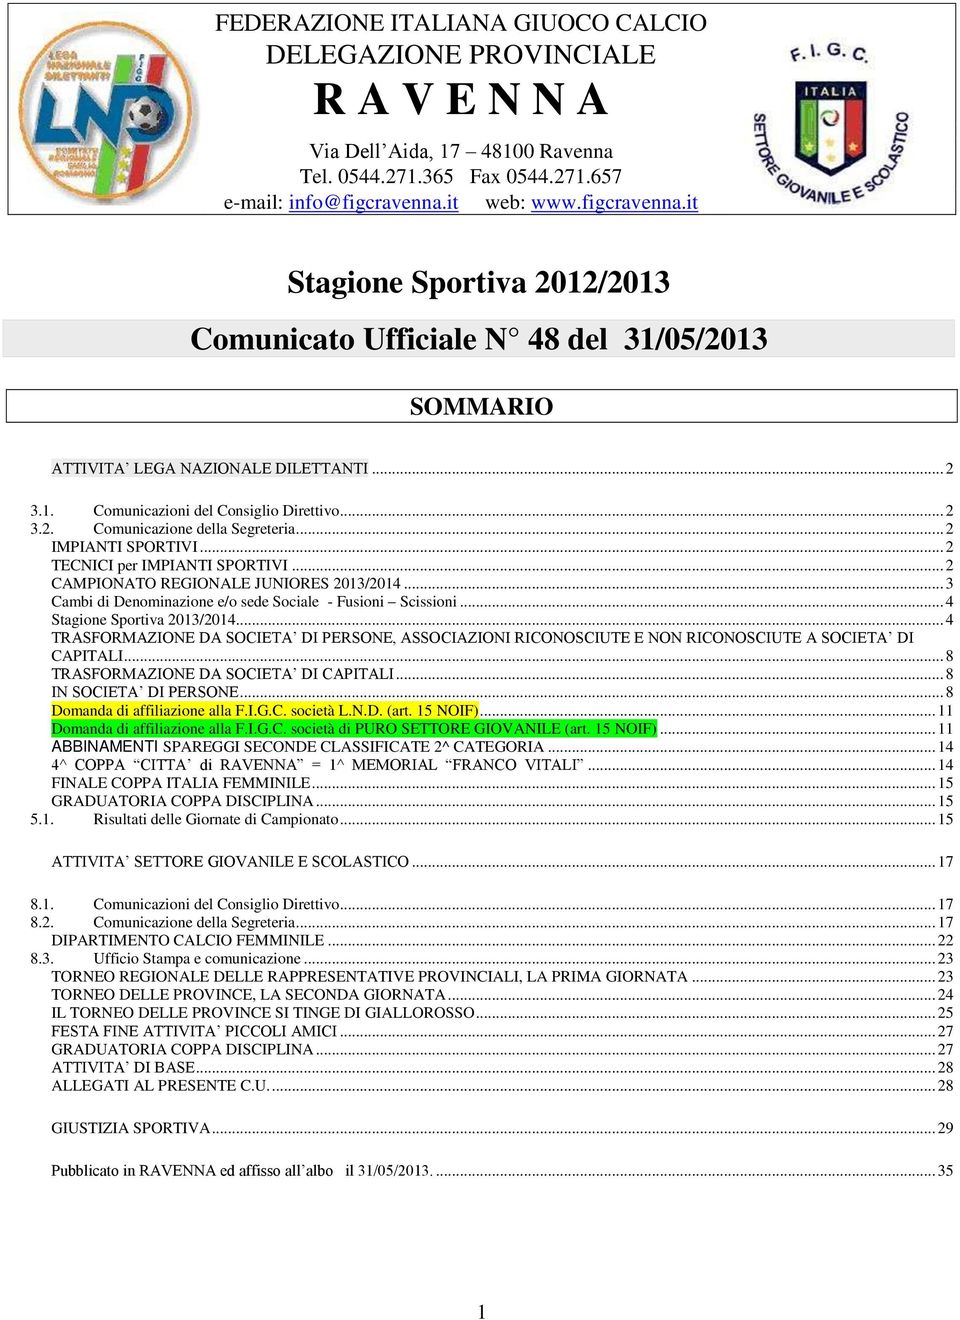 .. 2 IMPIANTI SPORTIVI... 2 TECNICI per IMPIANTI SPORTIVI... 2 CAMPIONATO REGIONALE JUNIORES 2013/2014... 3 Cambi di Denominazione e/o sede Sociale - Fusioni Scissioni... 4 Stagione Sportiva 2013/2014.